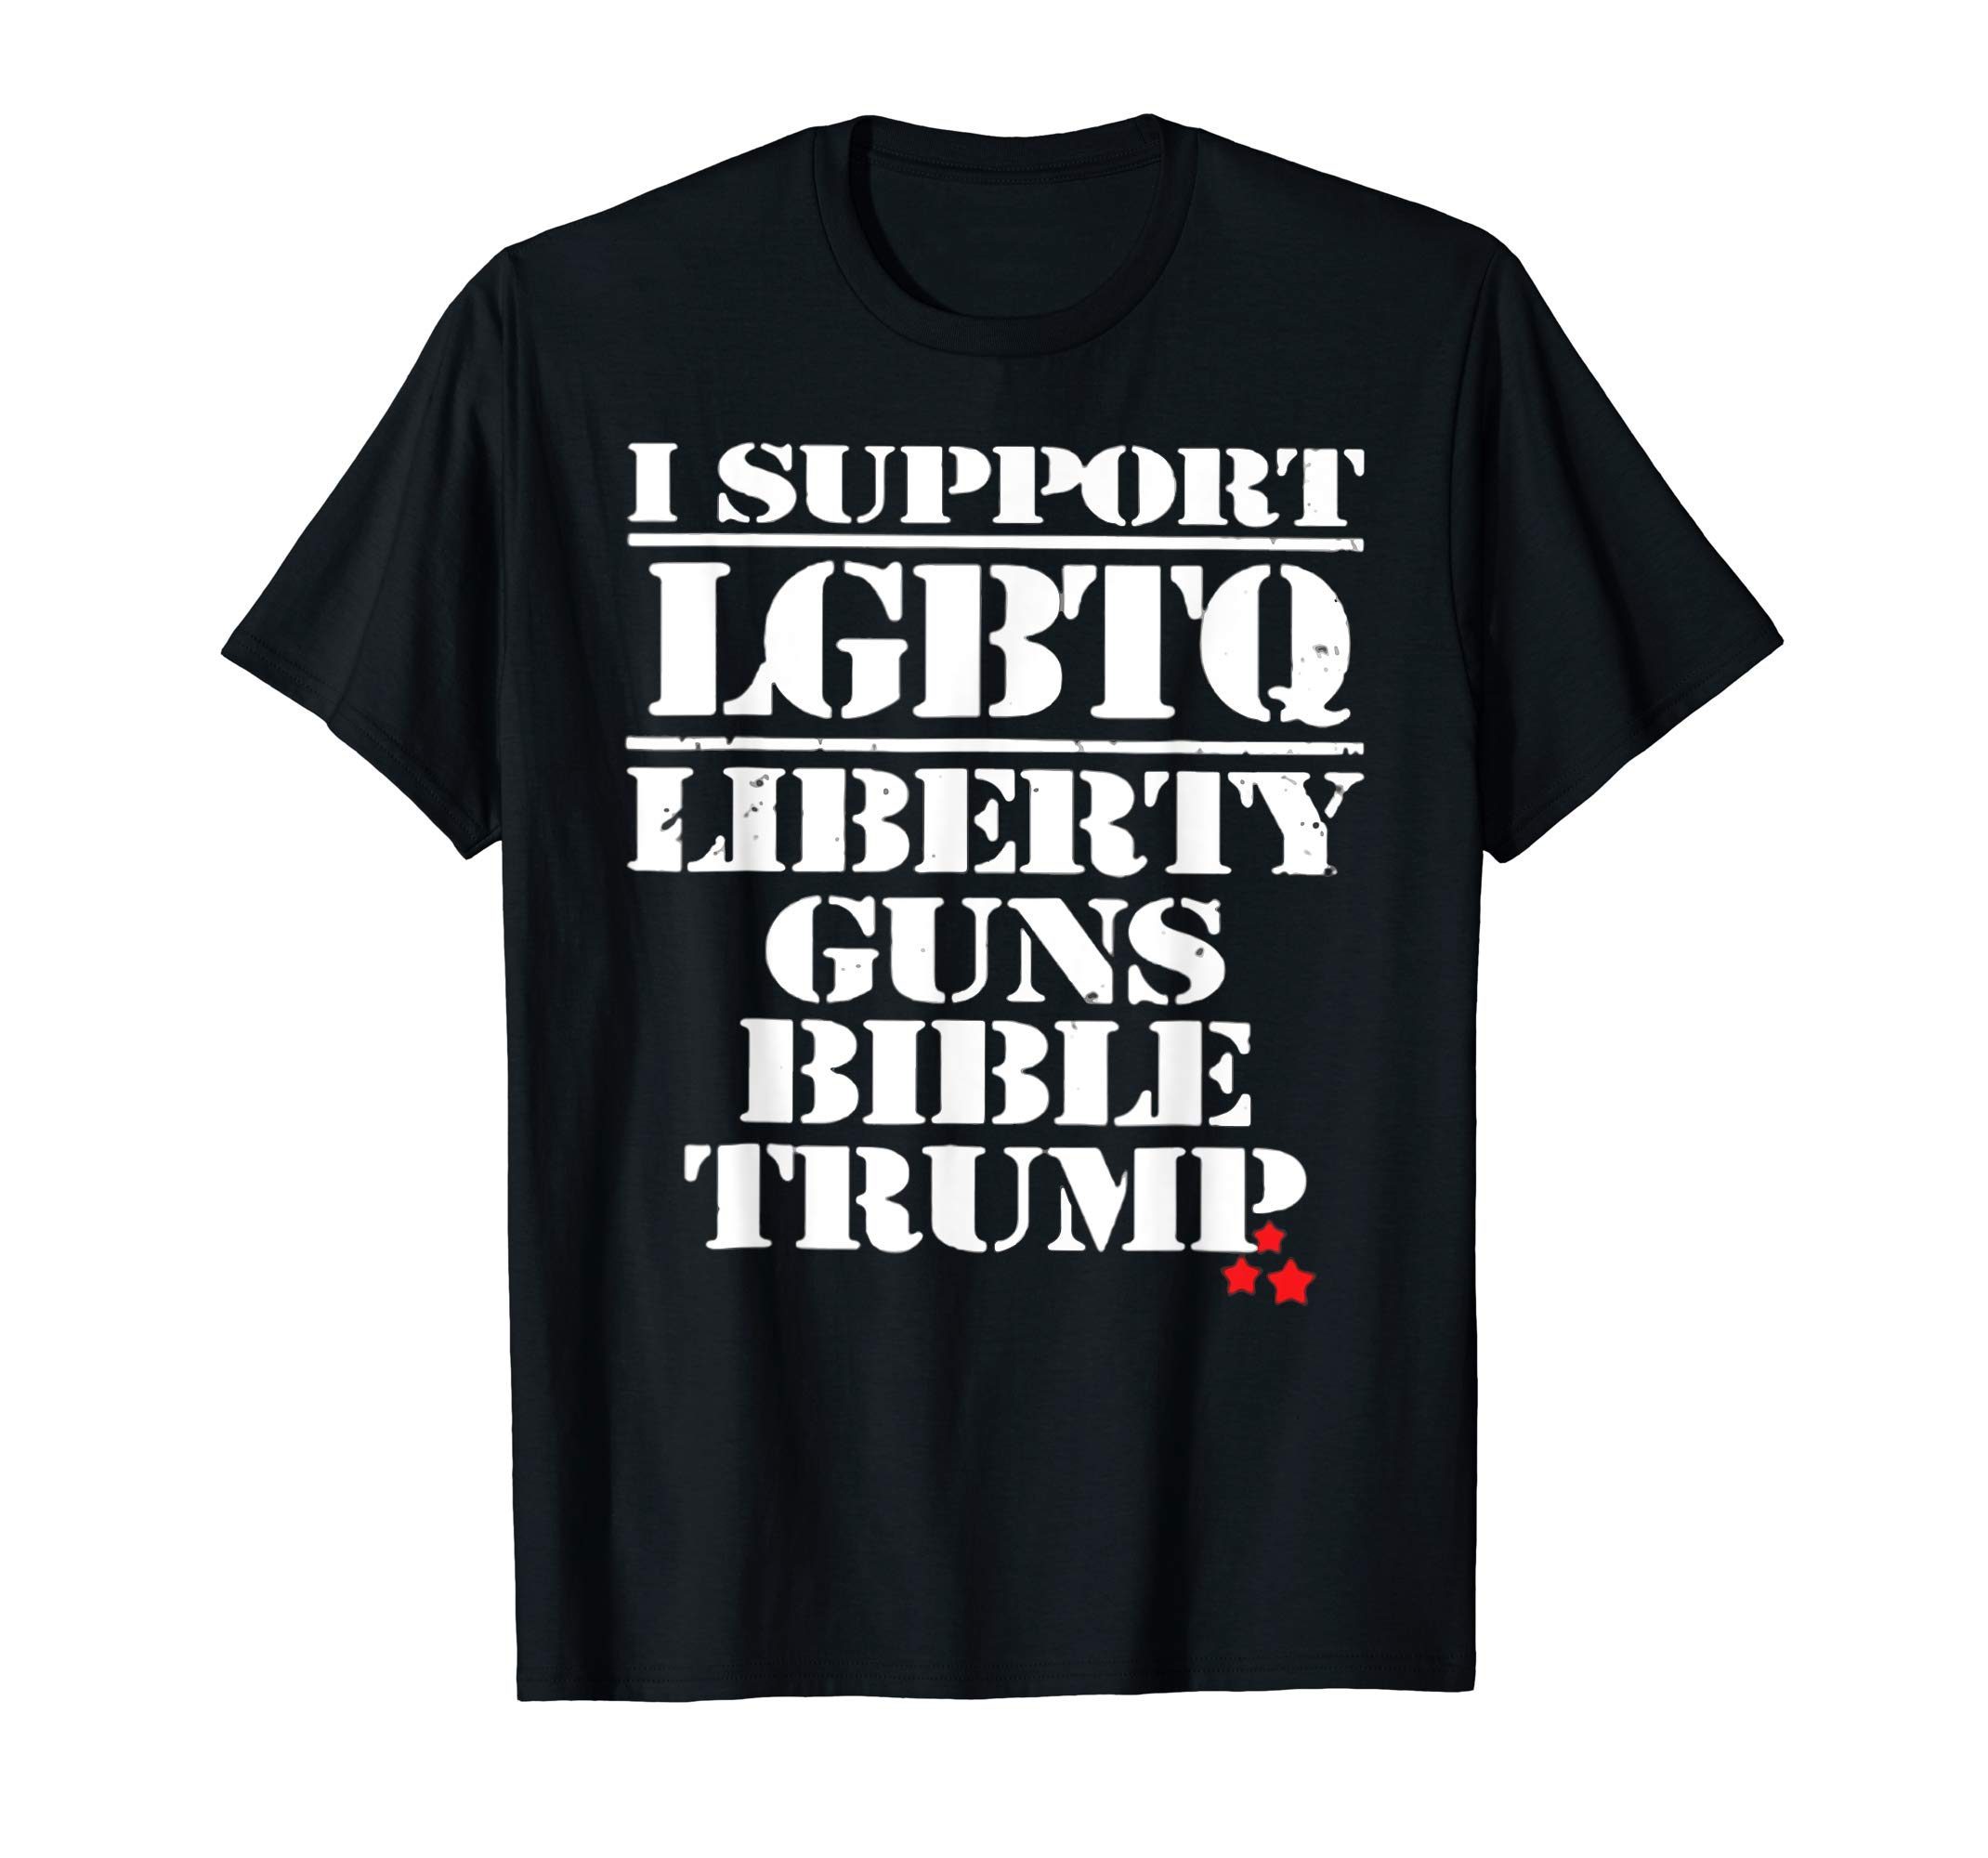 i support lgbt liberty guns bible trump shirt - Reviewshirts Office